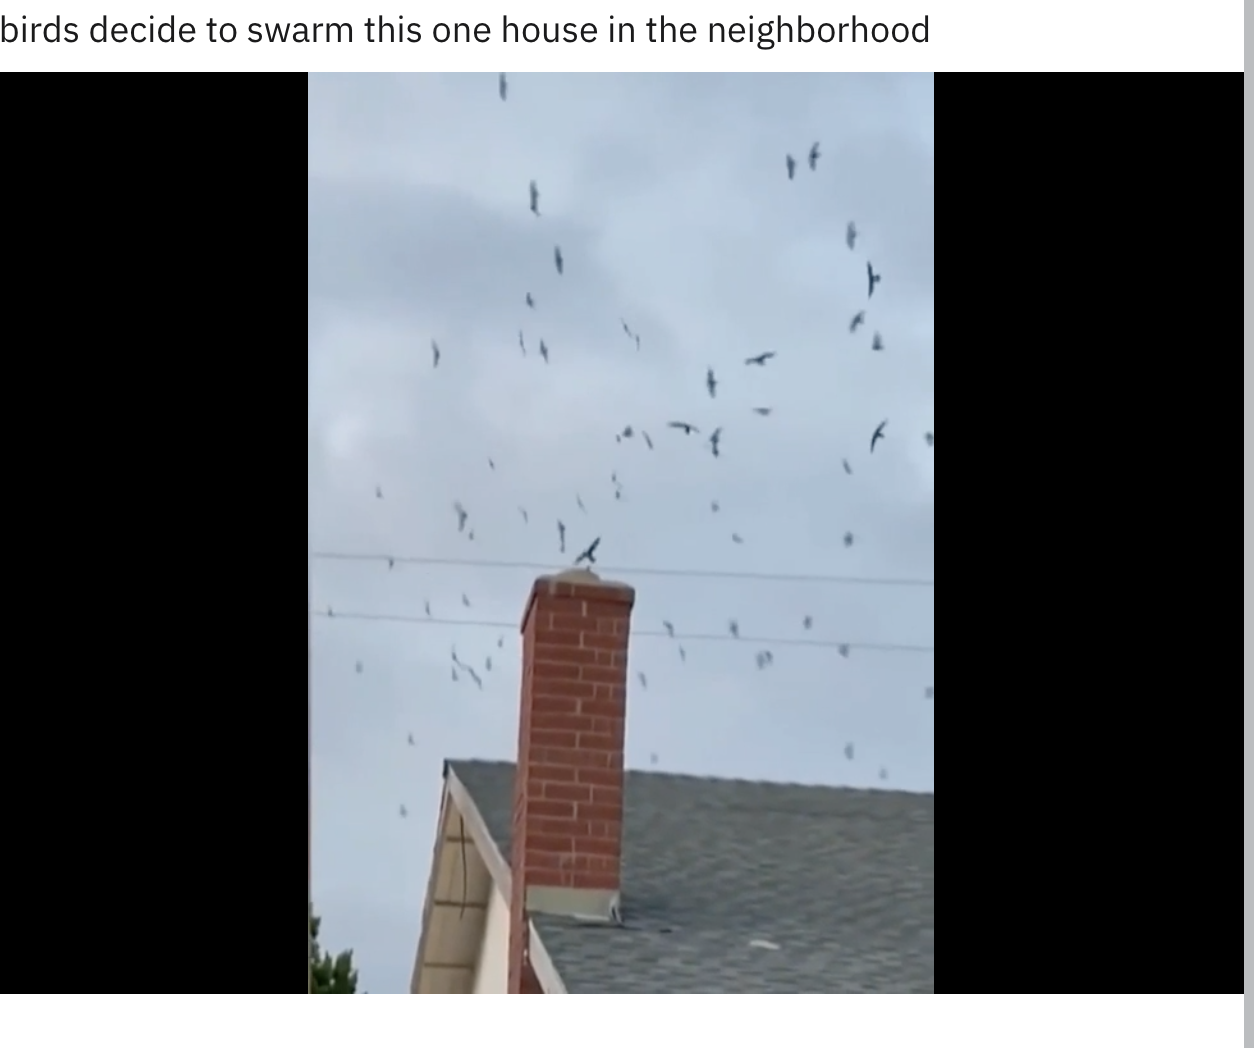 Birds swarming a house